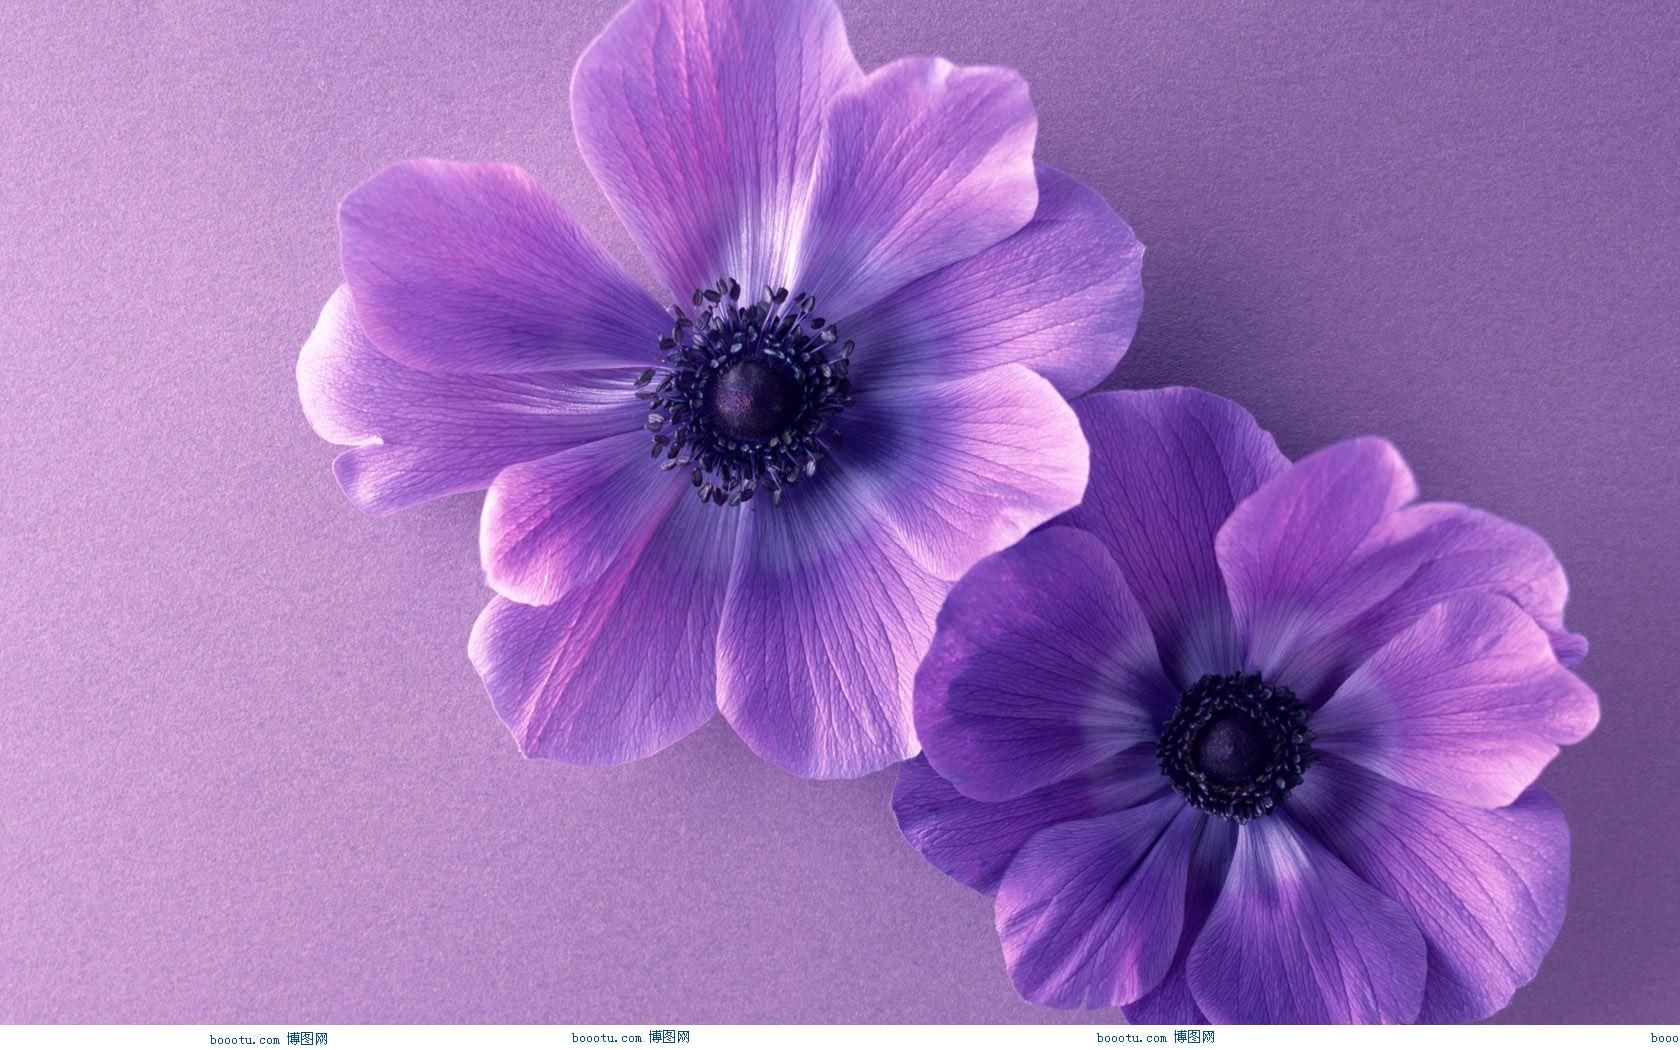 Image Detail For Cute Flower Wallpaper